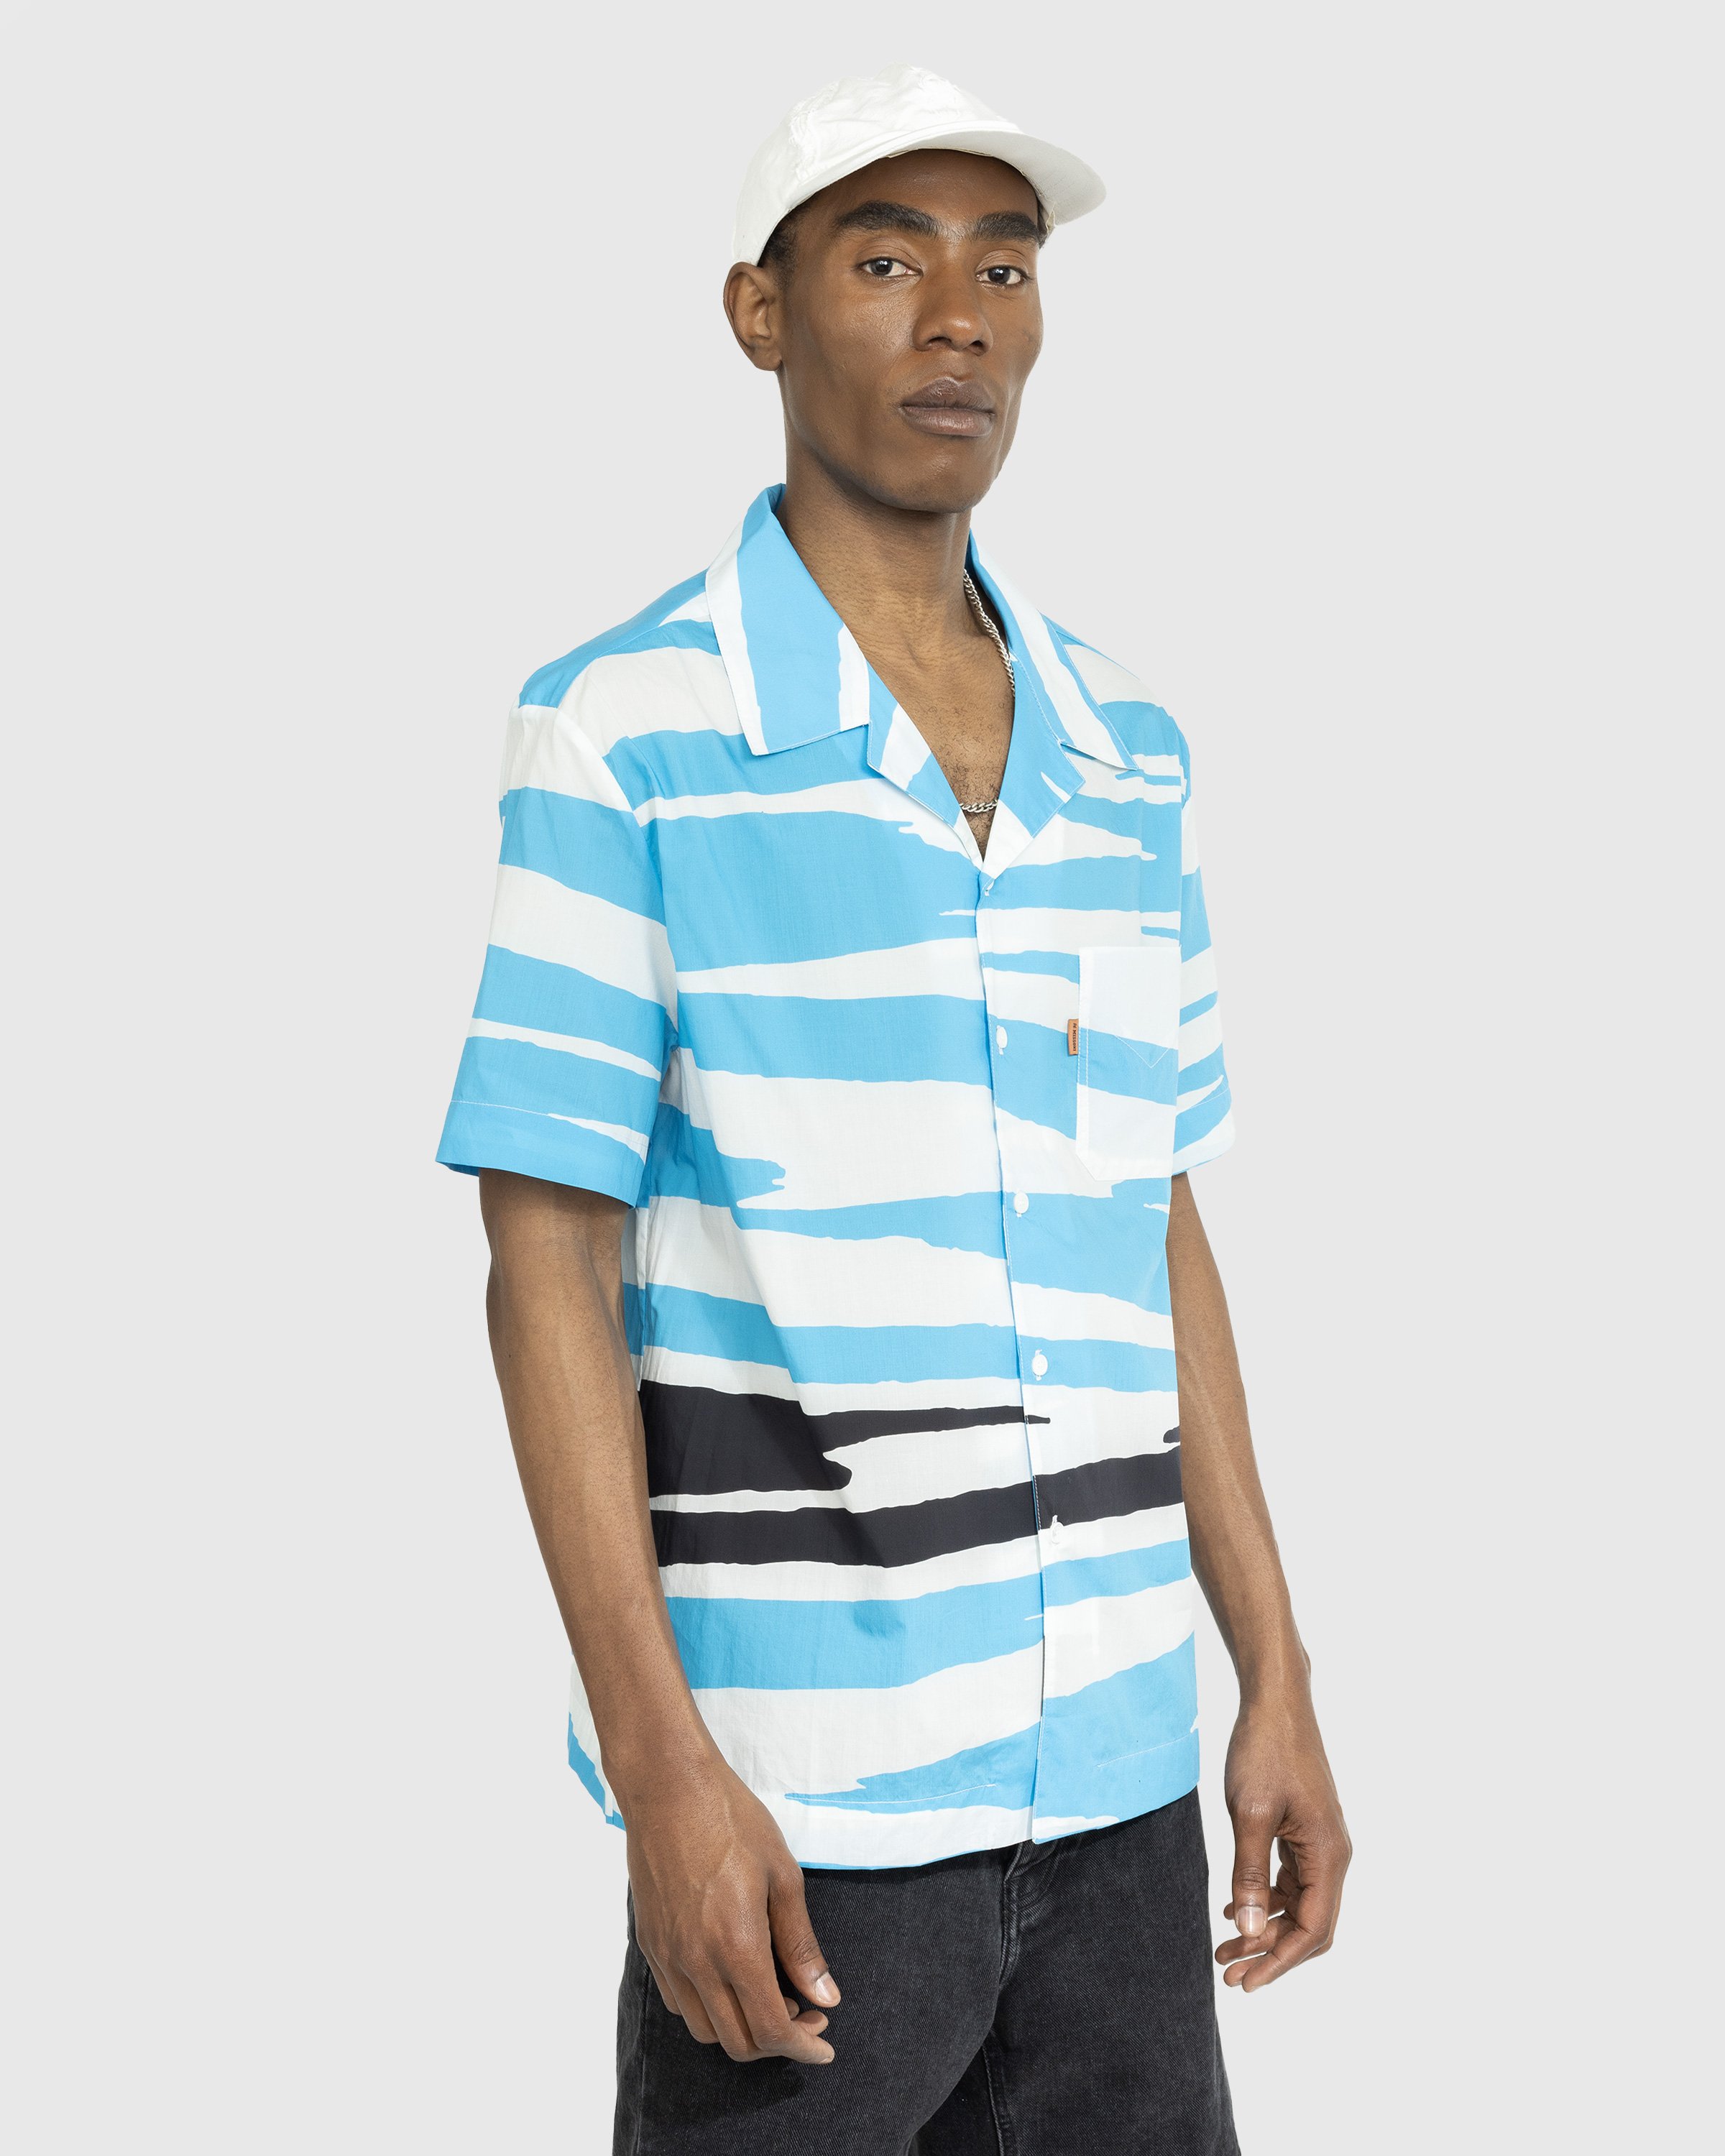 Missoni - Short-Sleeve Sweater Blue/Black/White - Clothing - Multi - Image 2